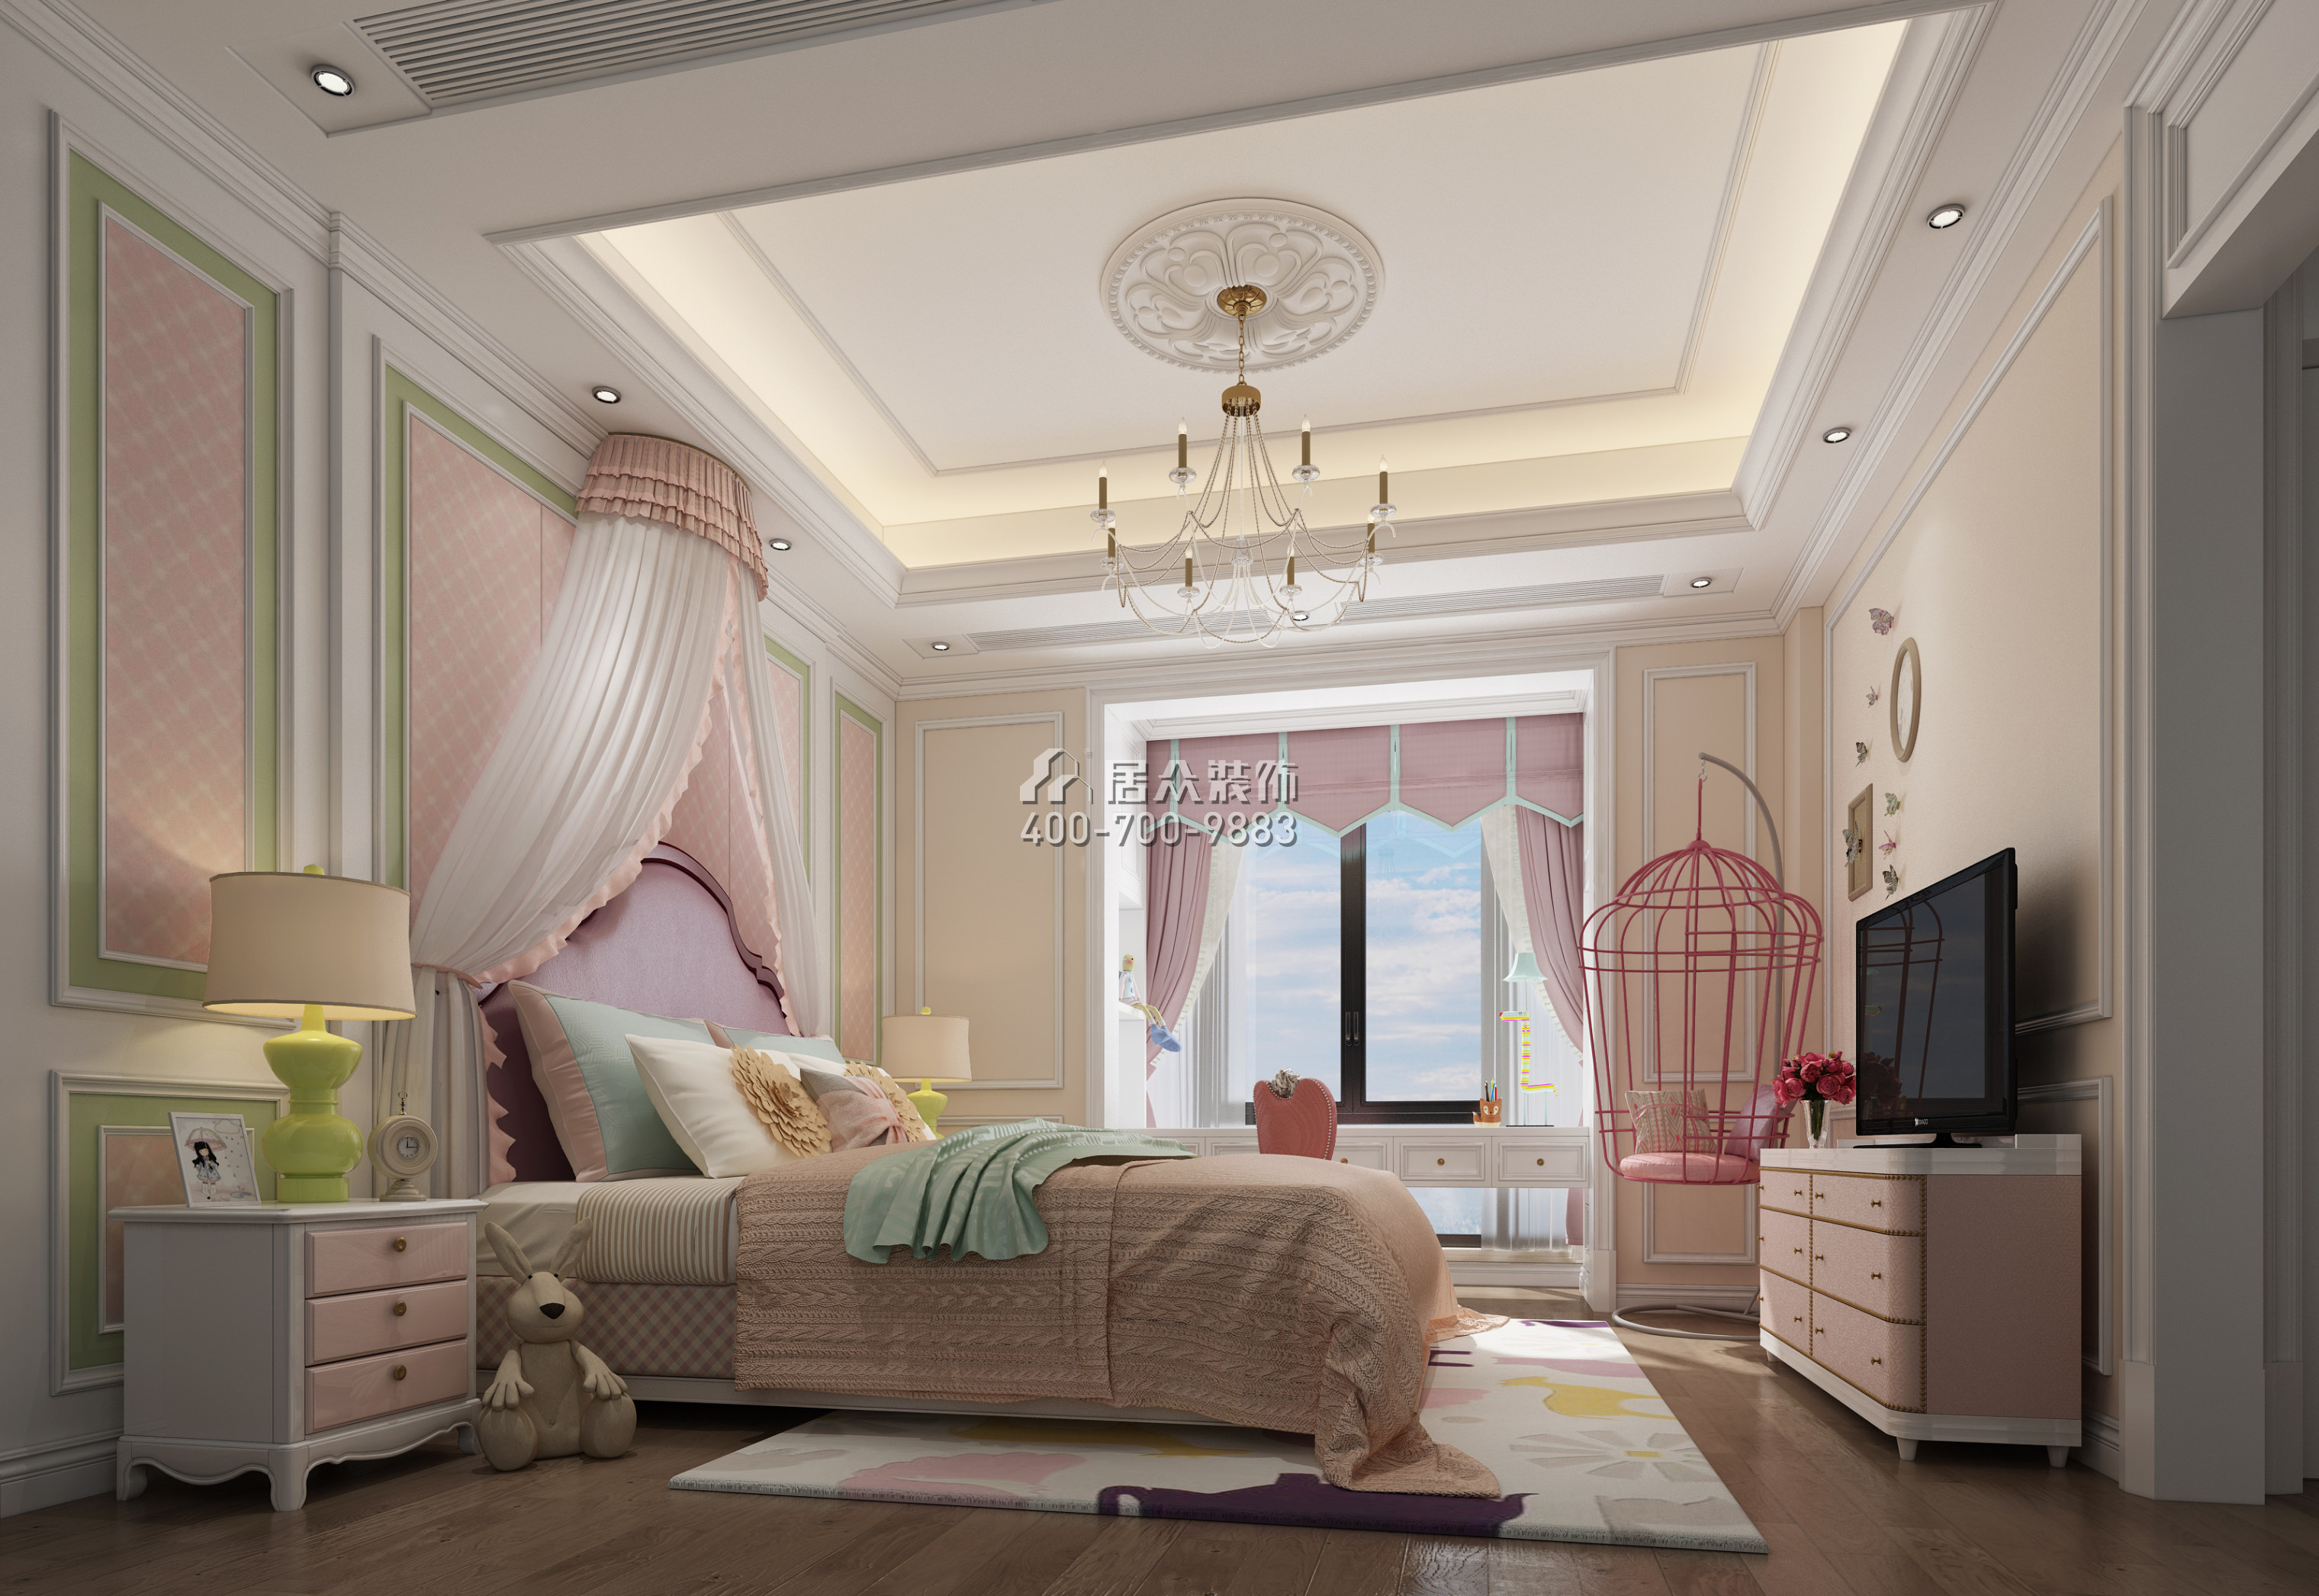 碧桂园天玺湾300平方米中式风格平层户型卧室装修效果图